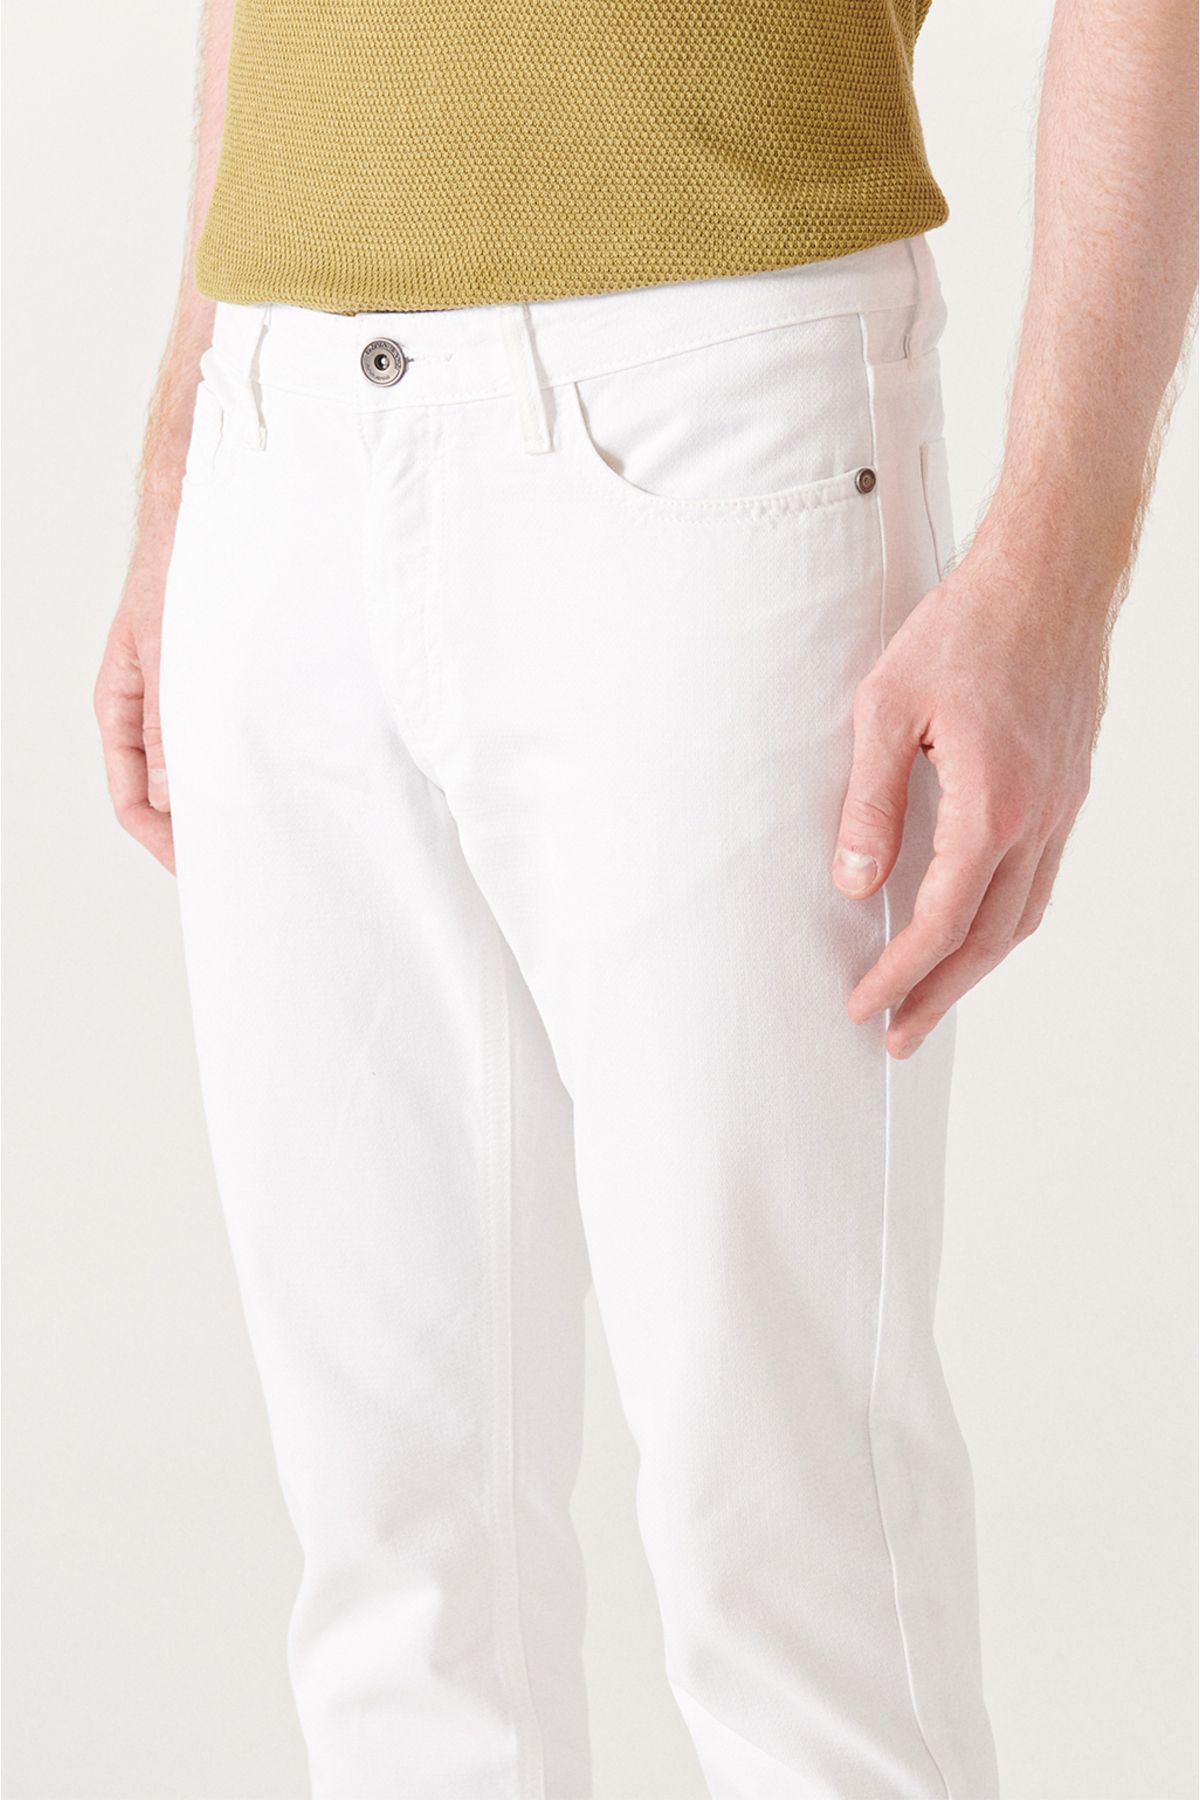 Avva شلوار کانواس مردانه سفید دابی فلکسیبل 5 جیبی باریک Fit Slim E003007